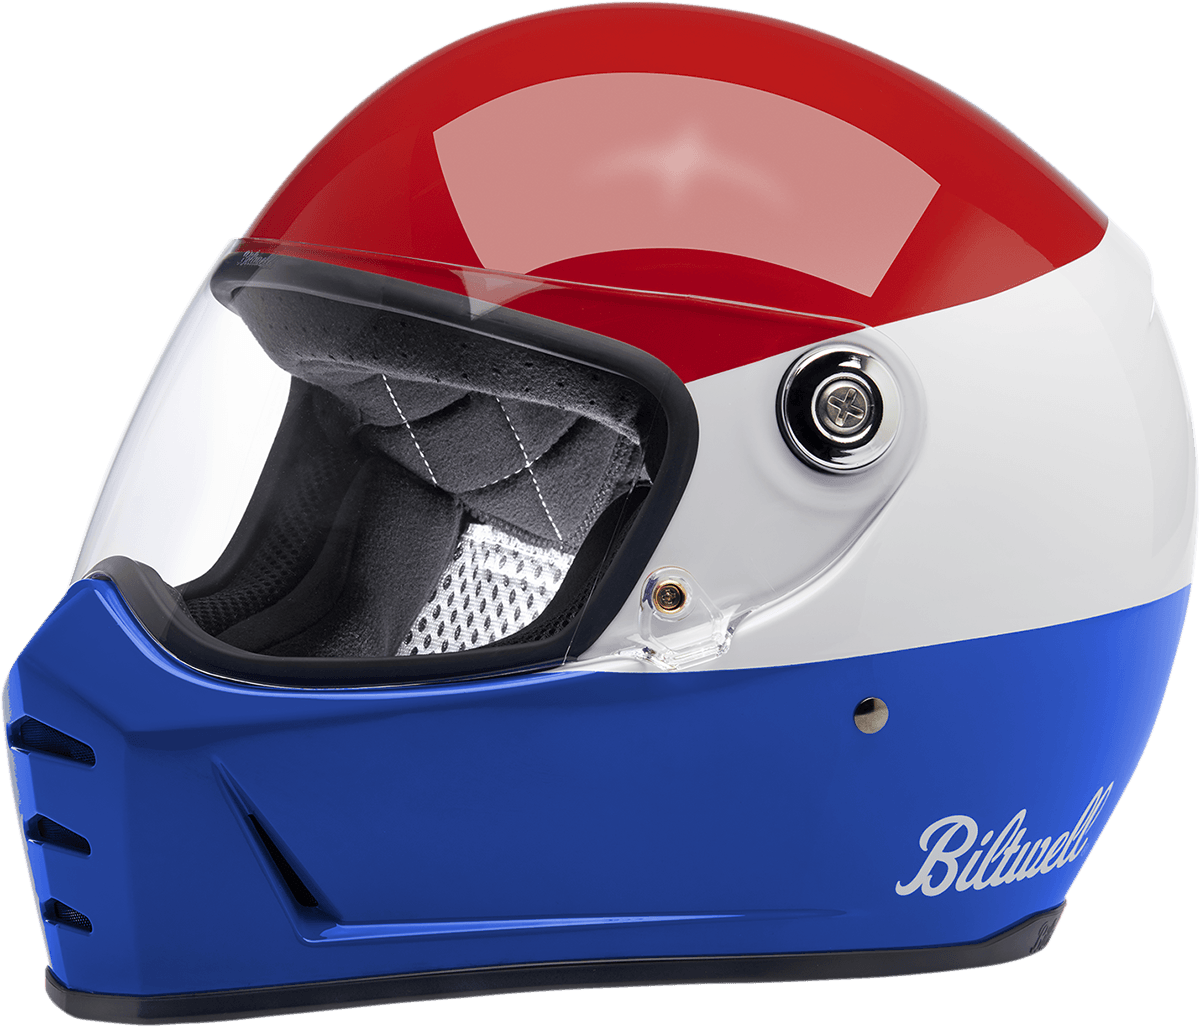 BILTWELL-Lane Splitter Helmet / Podium Red White Blue-Helmet-MetalCore Harley Supply